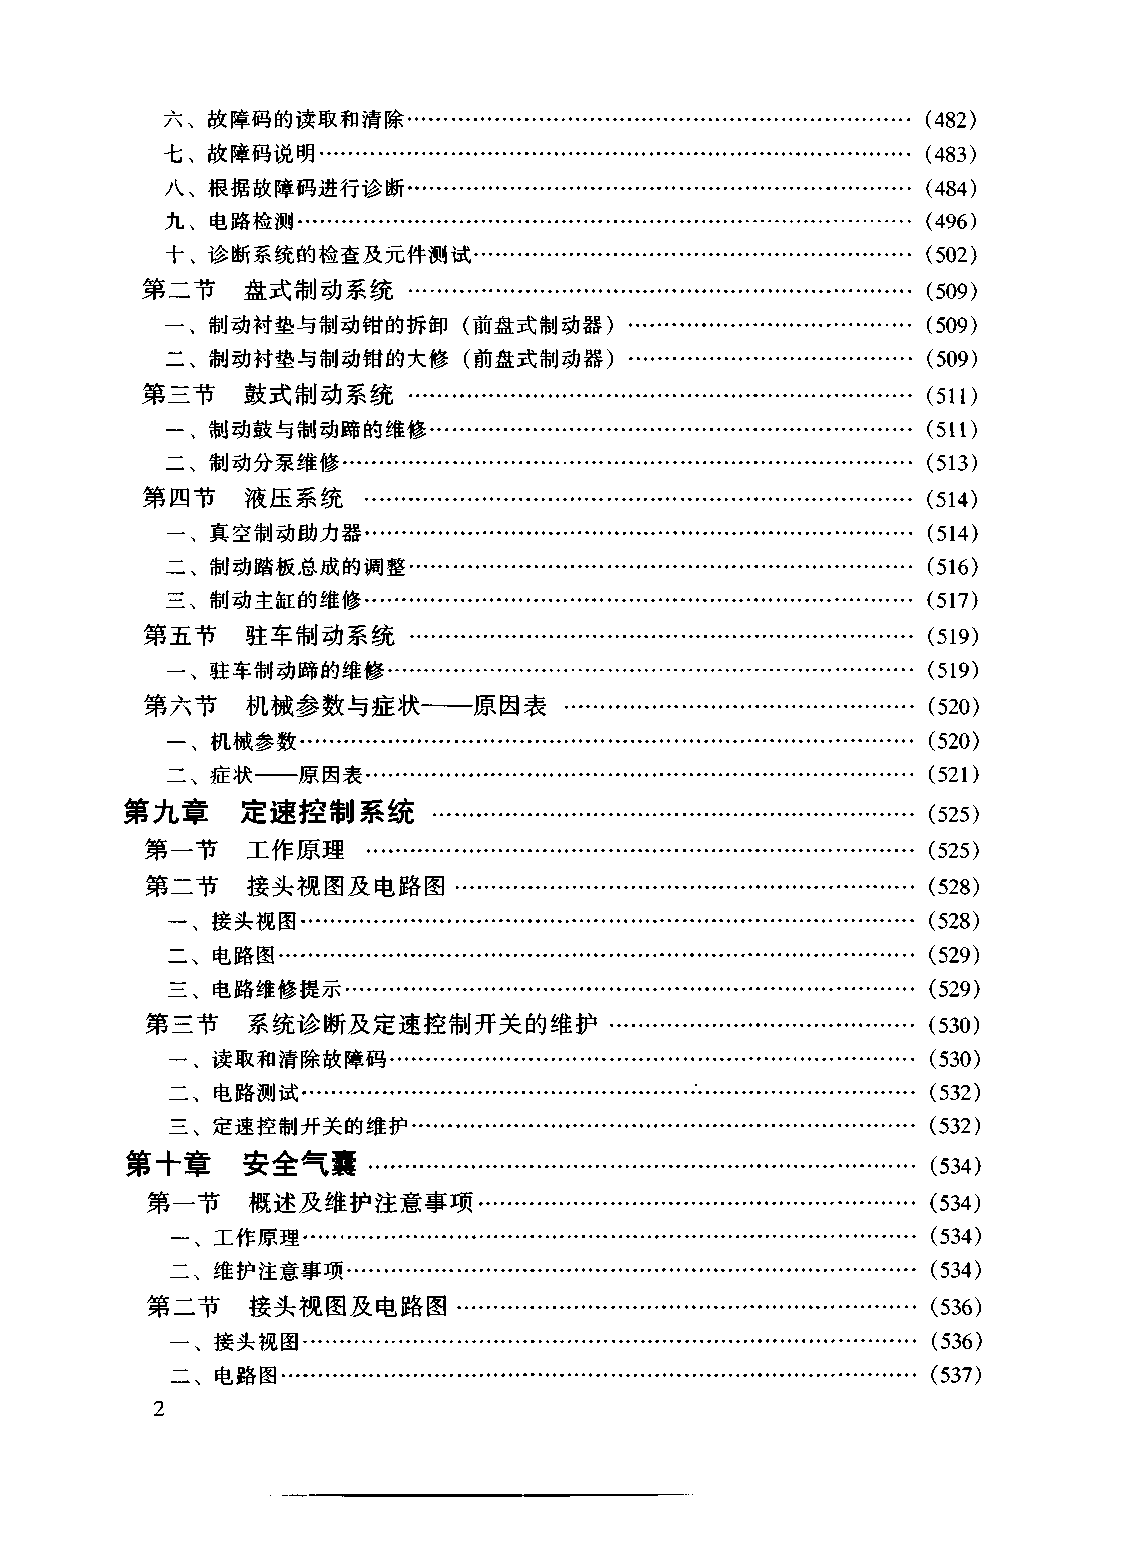 佳美维修手册 粤科1999D (2).pdf-第7页.png